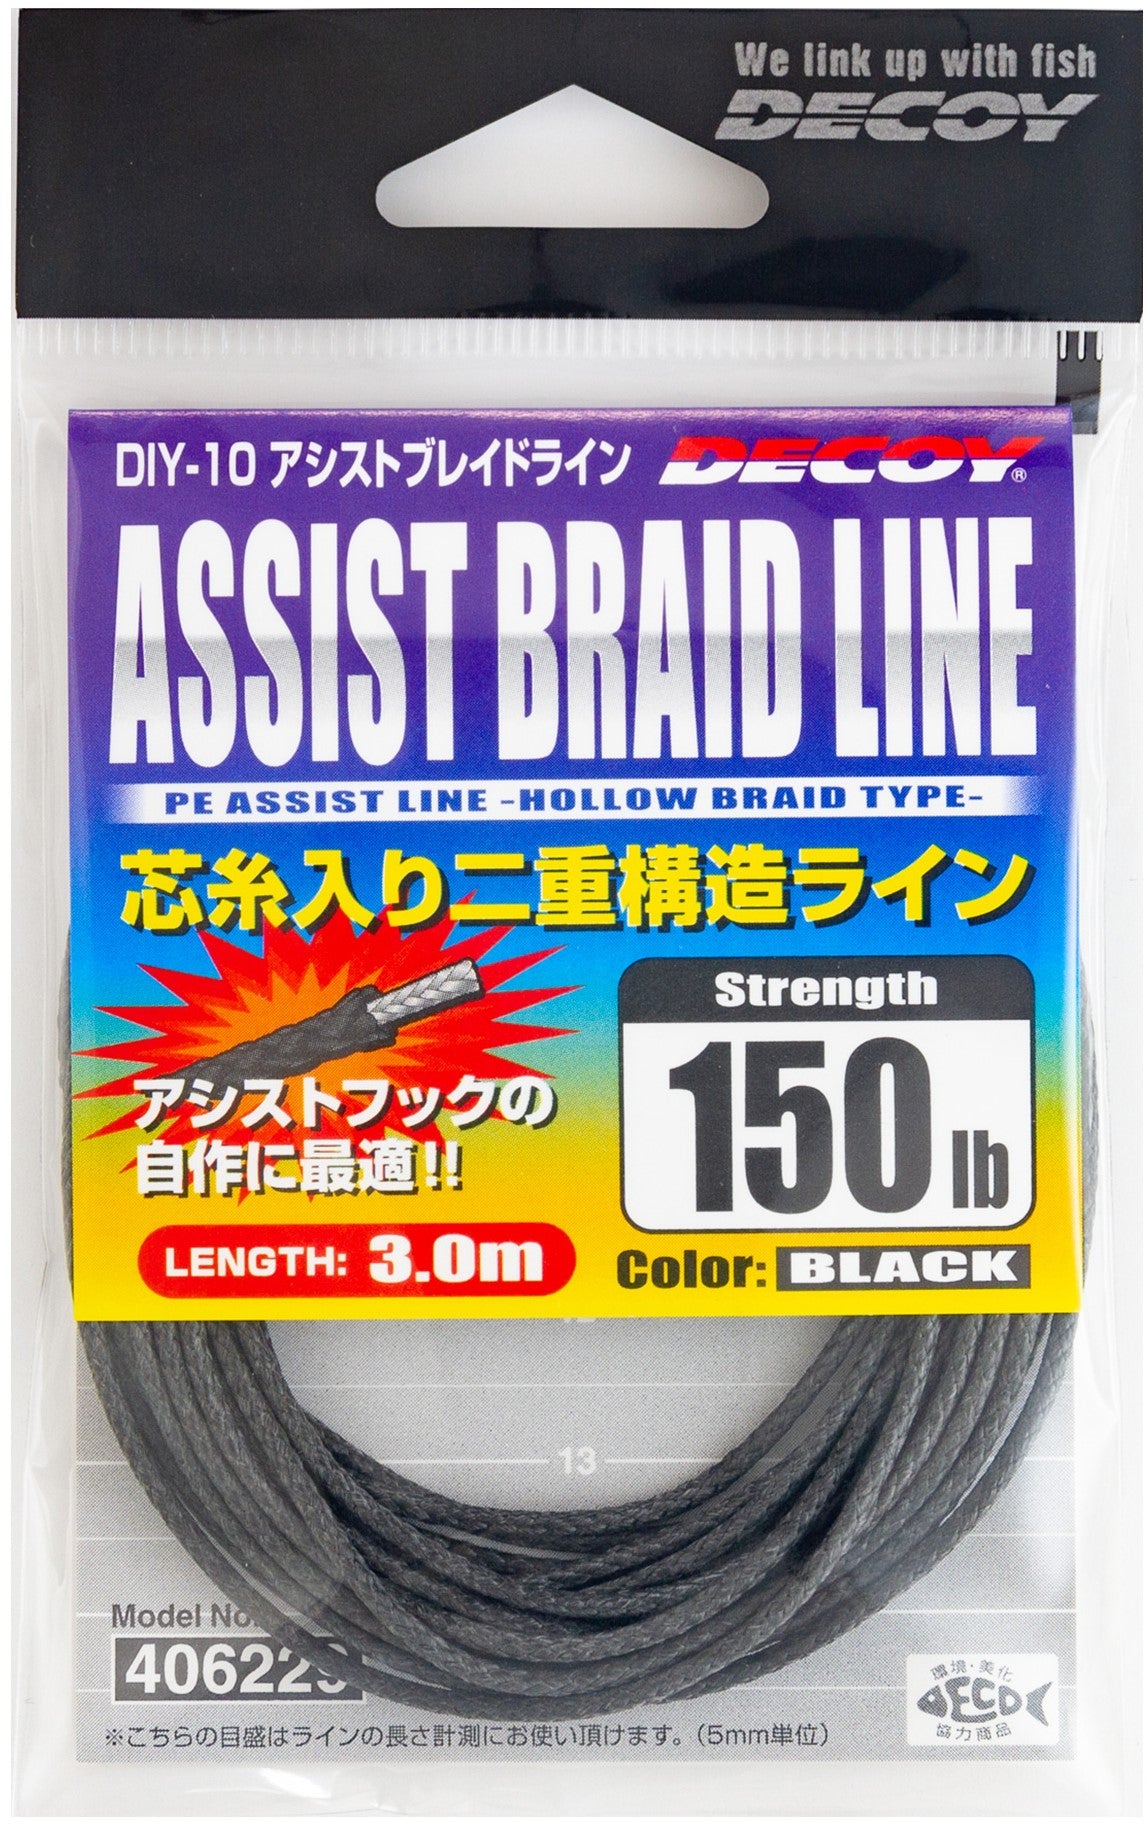 Decoy Assist Braid Line (DIY-10) –